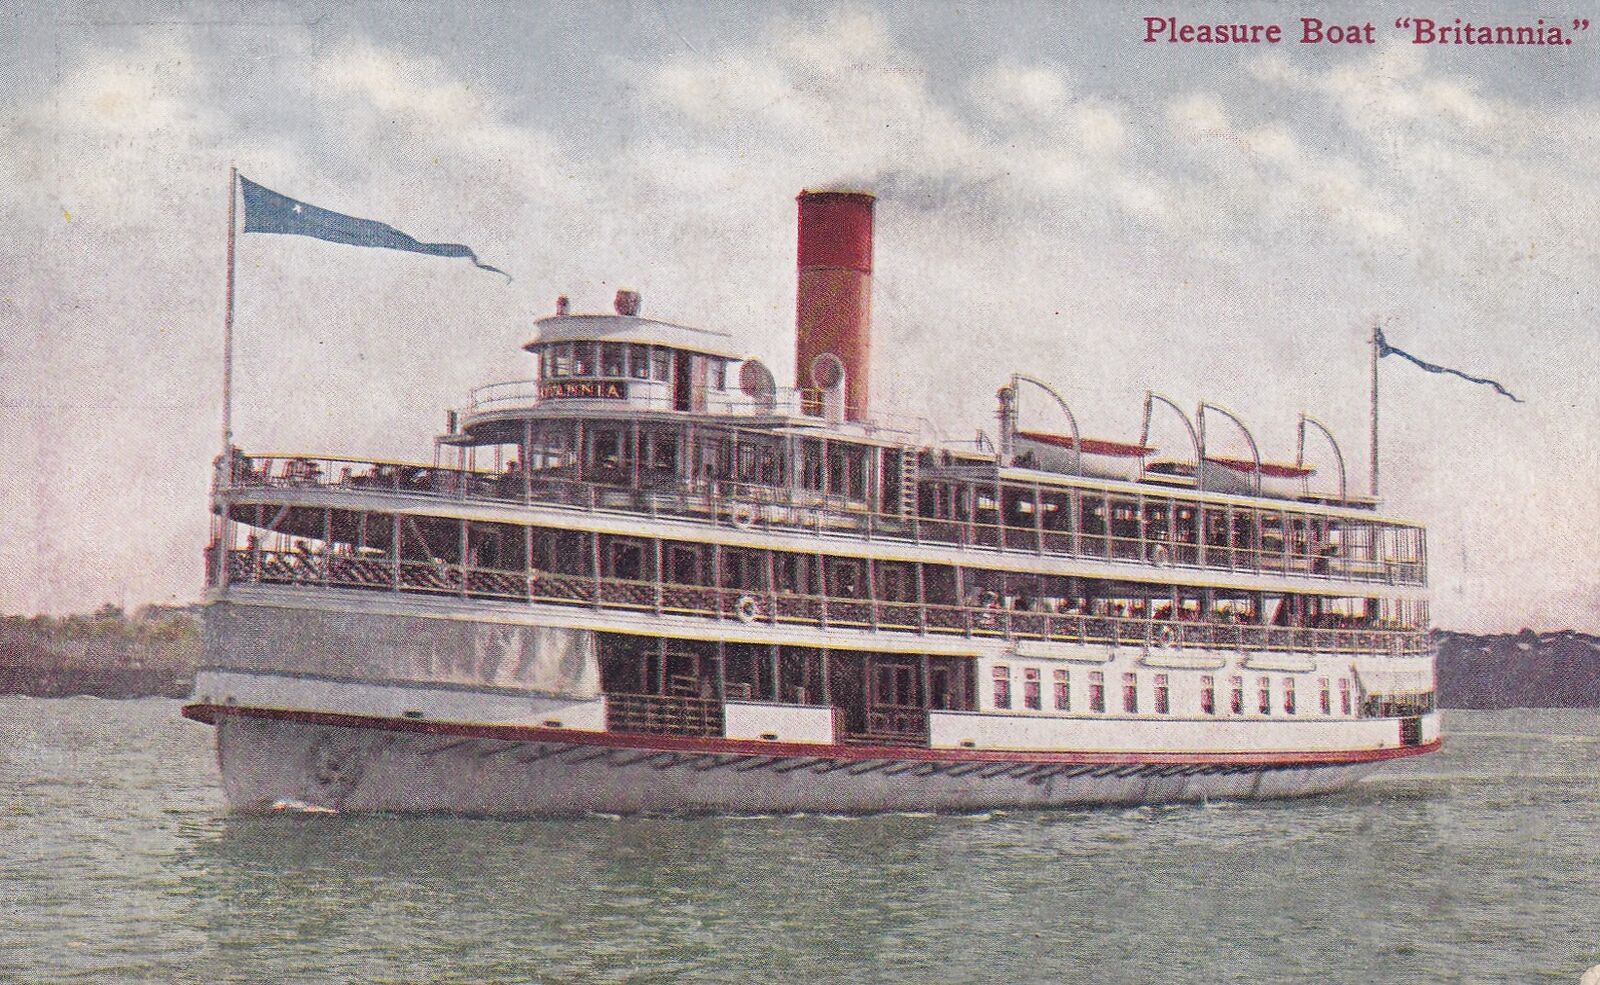 Pleasure Boat Britannia Postcard 